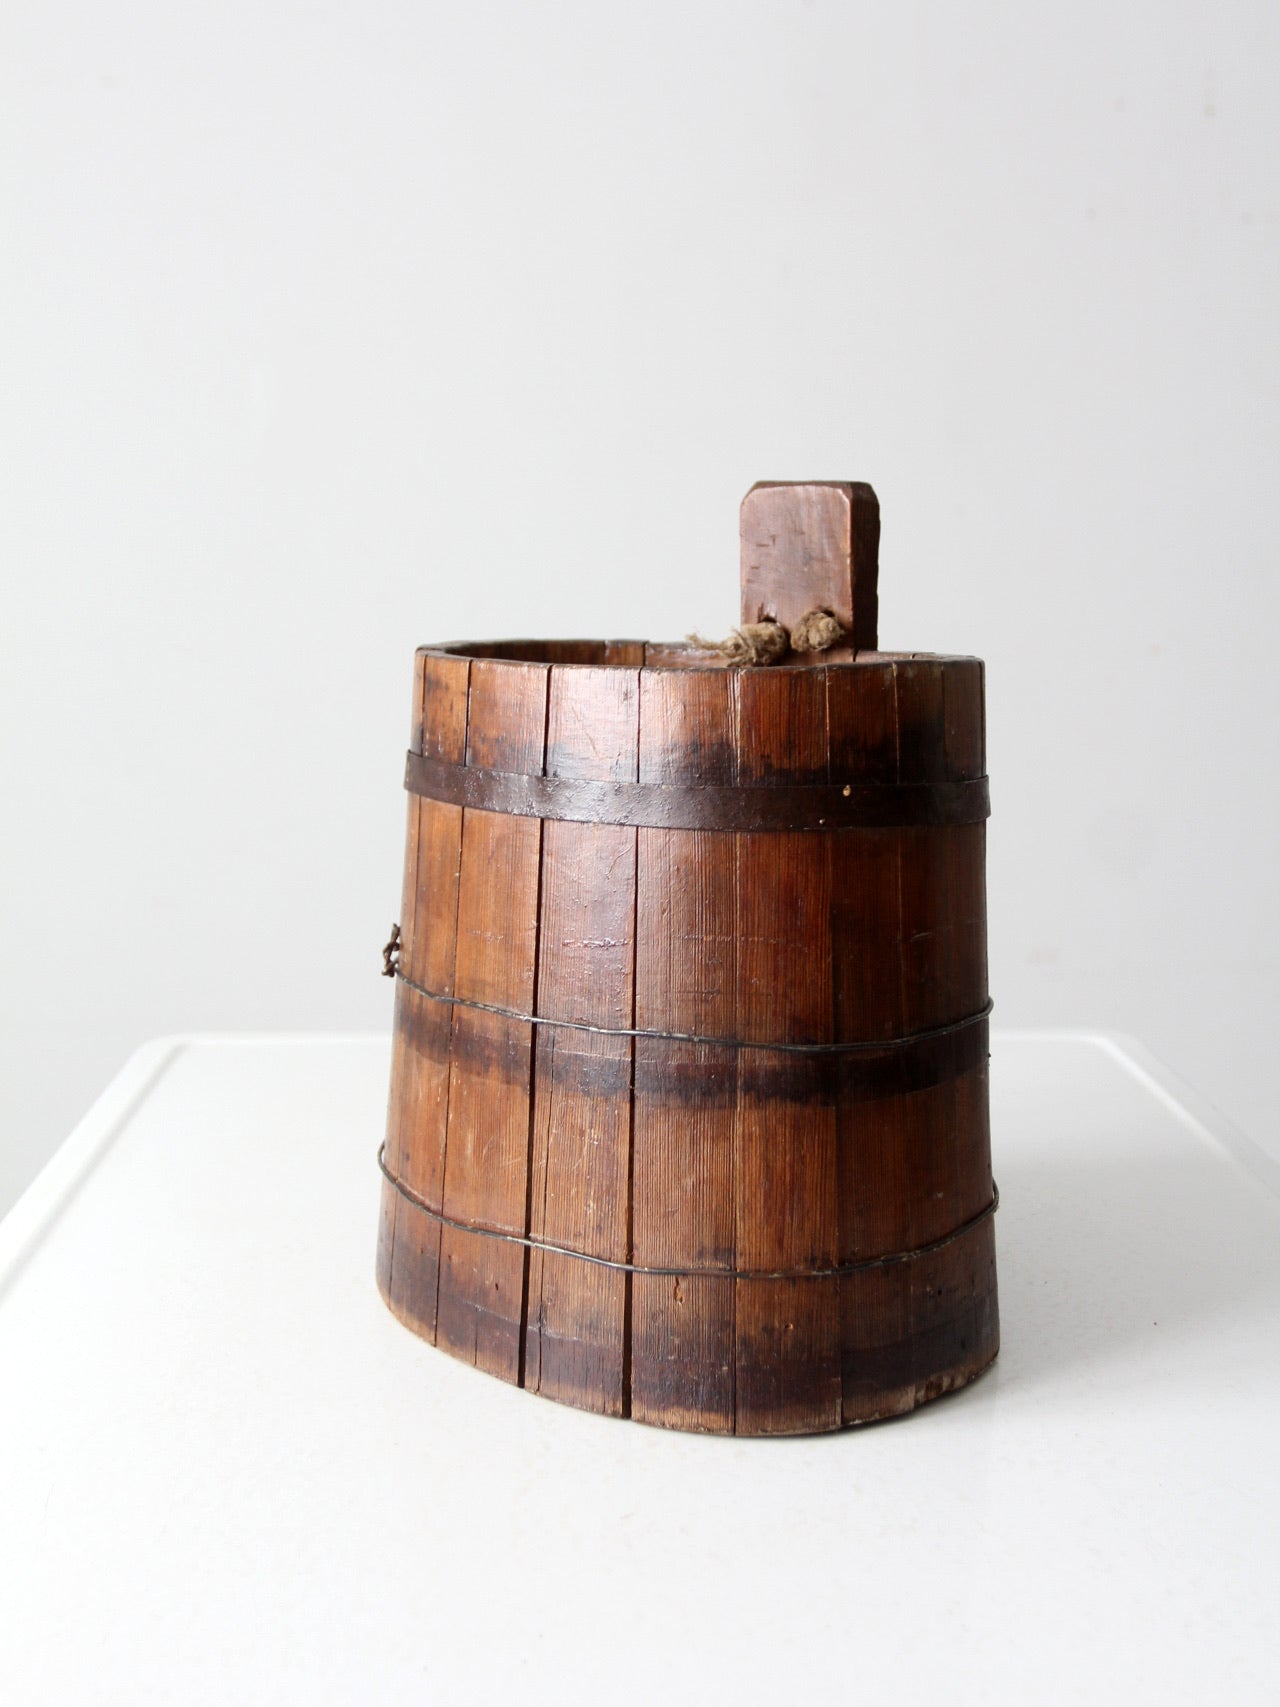 antique primitive wood stave cask pail